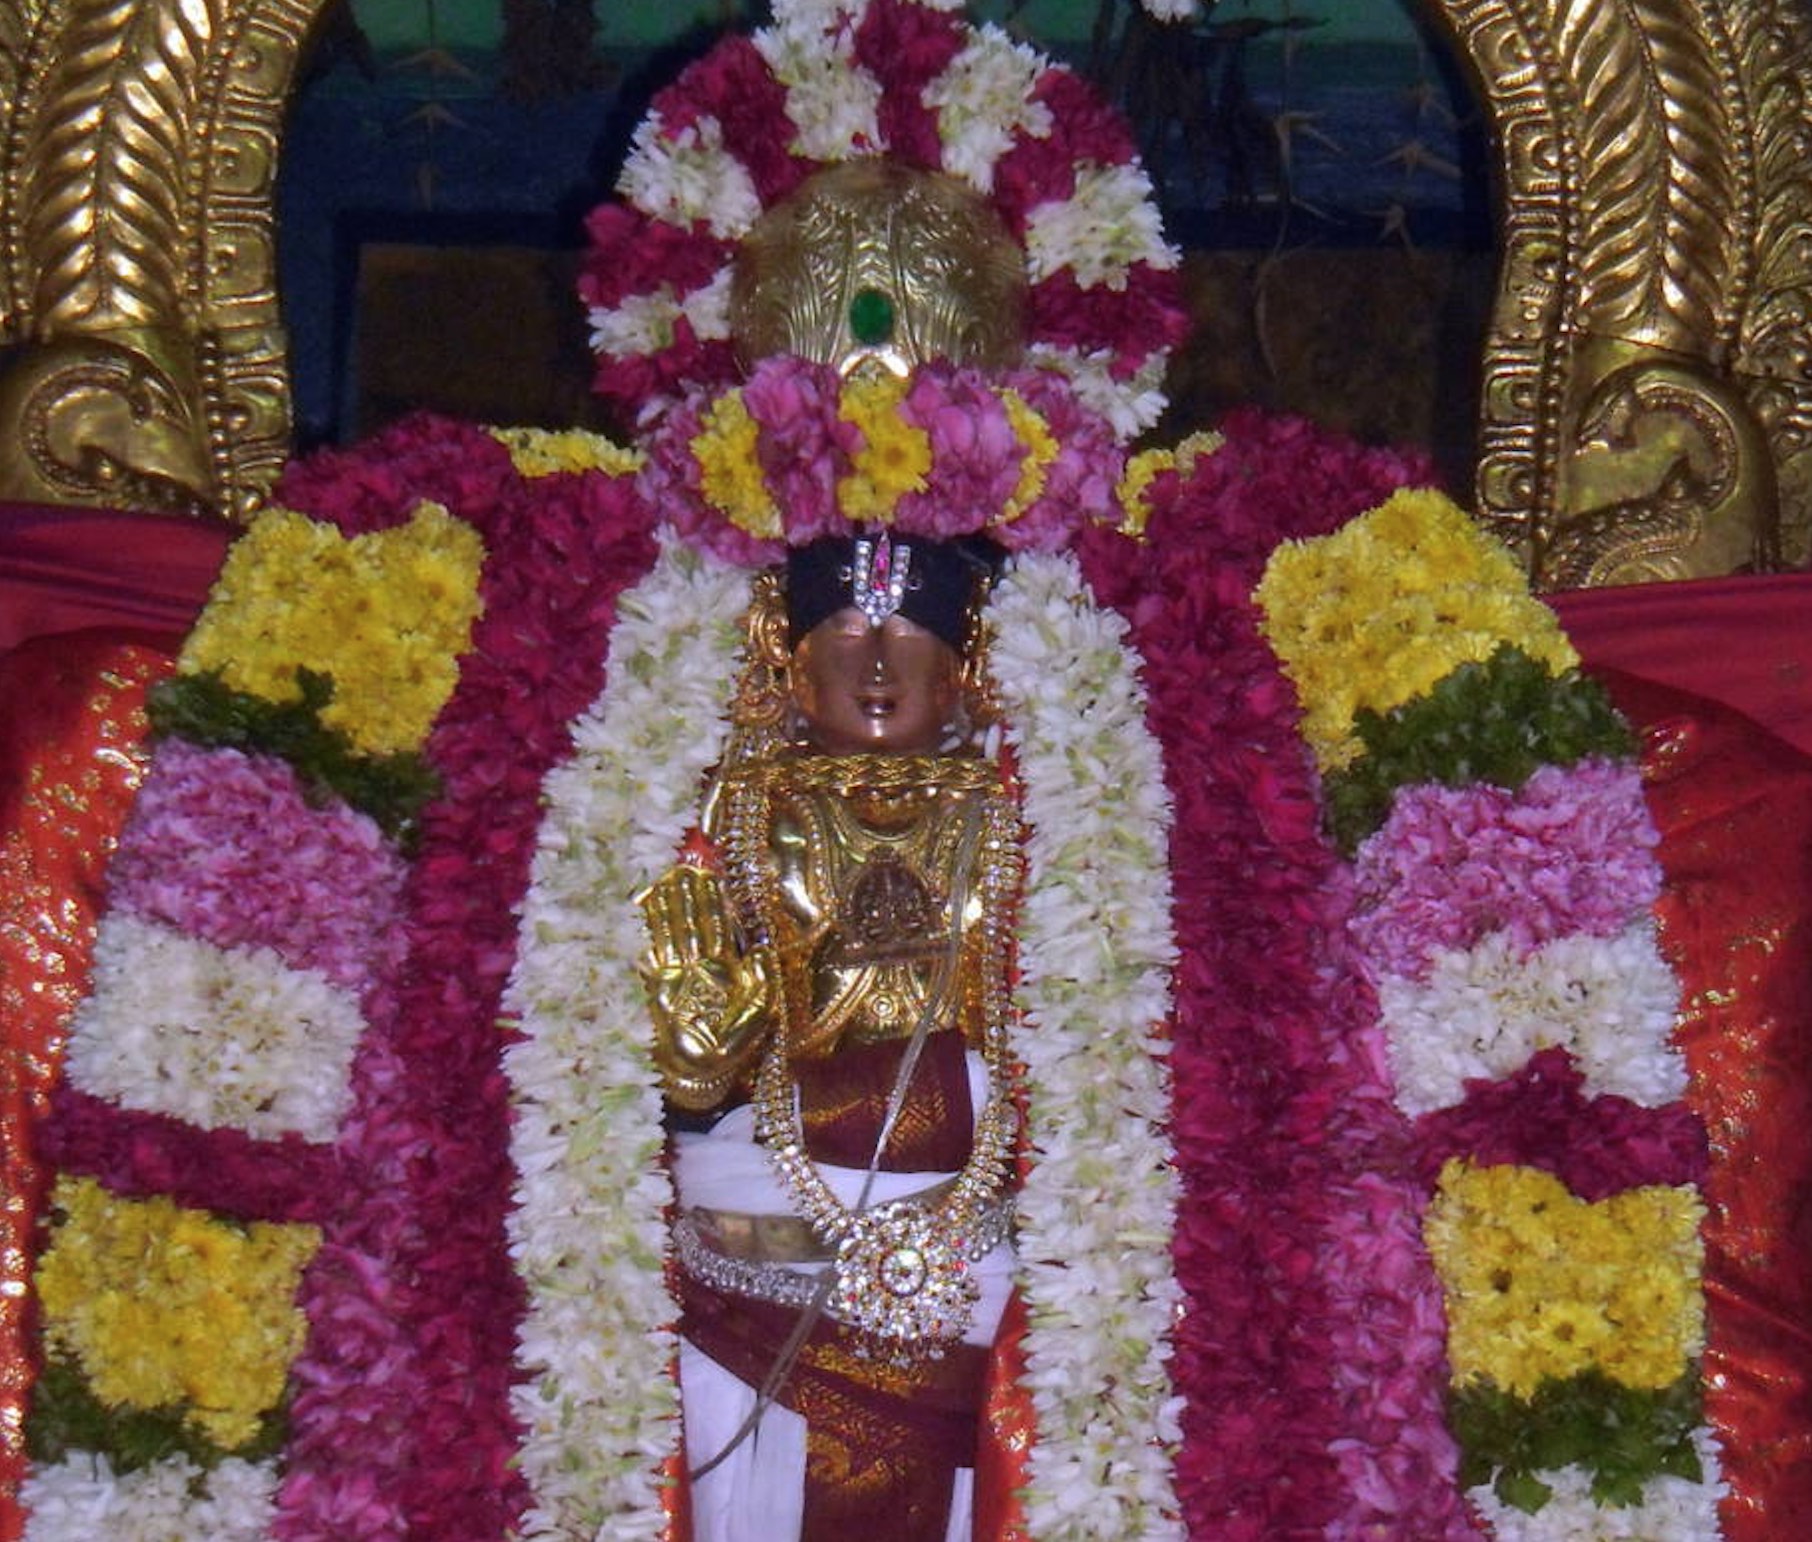 Thirukannamangai Bhakthavatsala Perumal Temple iRappathu day 6-2014